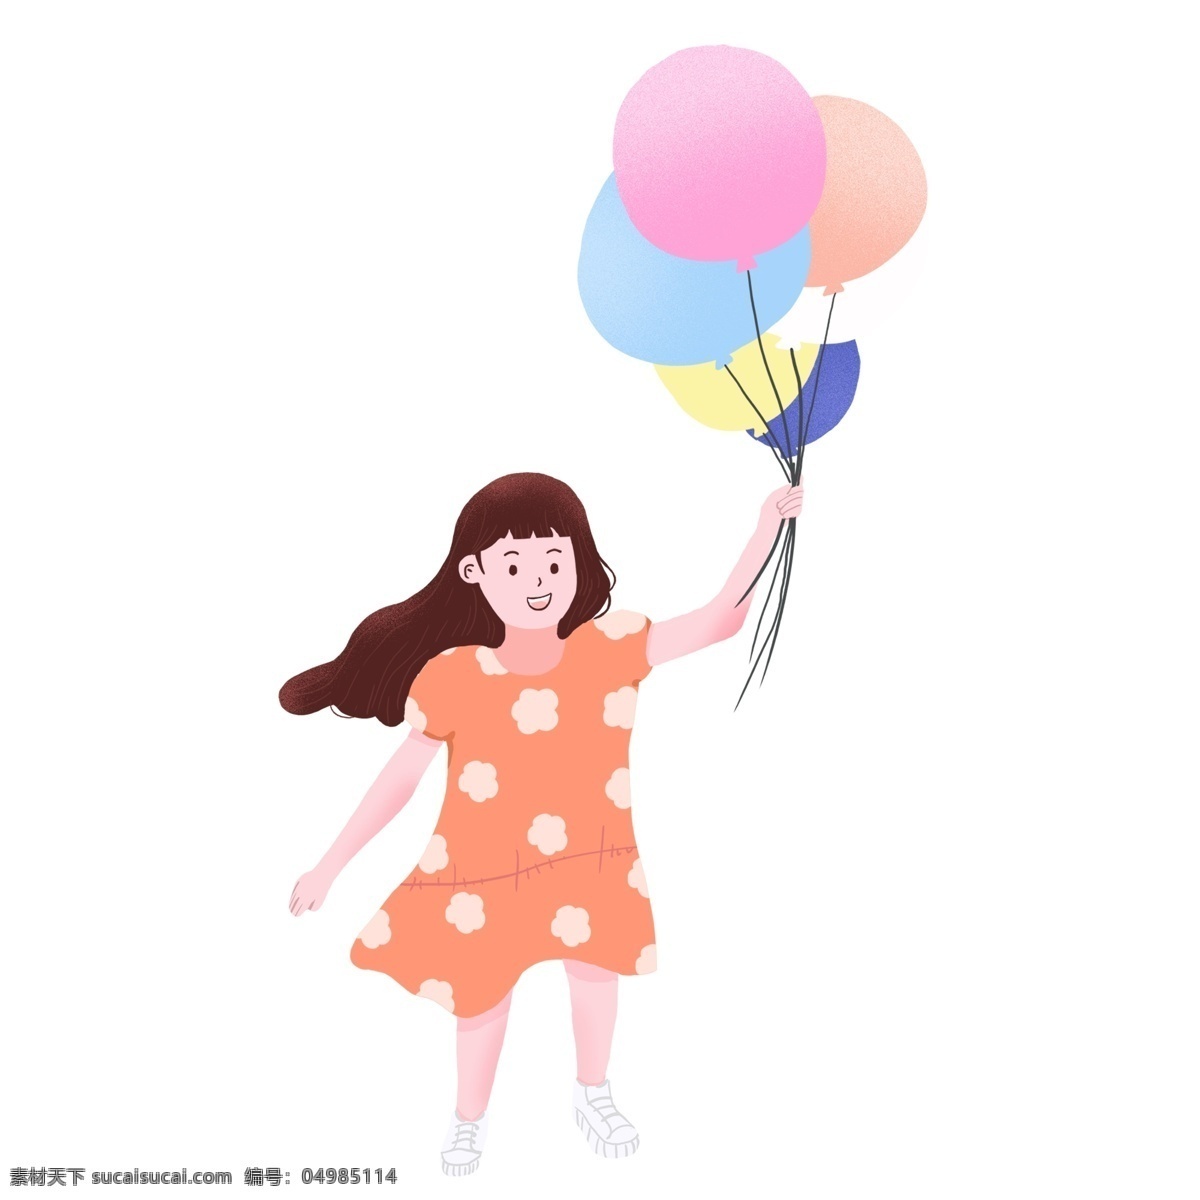 可爱 风 气球 女孩 插画 人物 元素 拿气球女孩 卡通元素 少女元素 插画人物